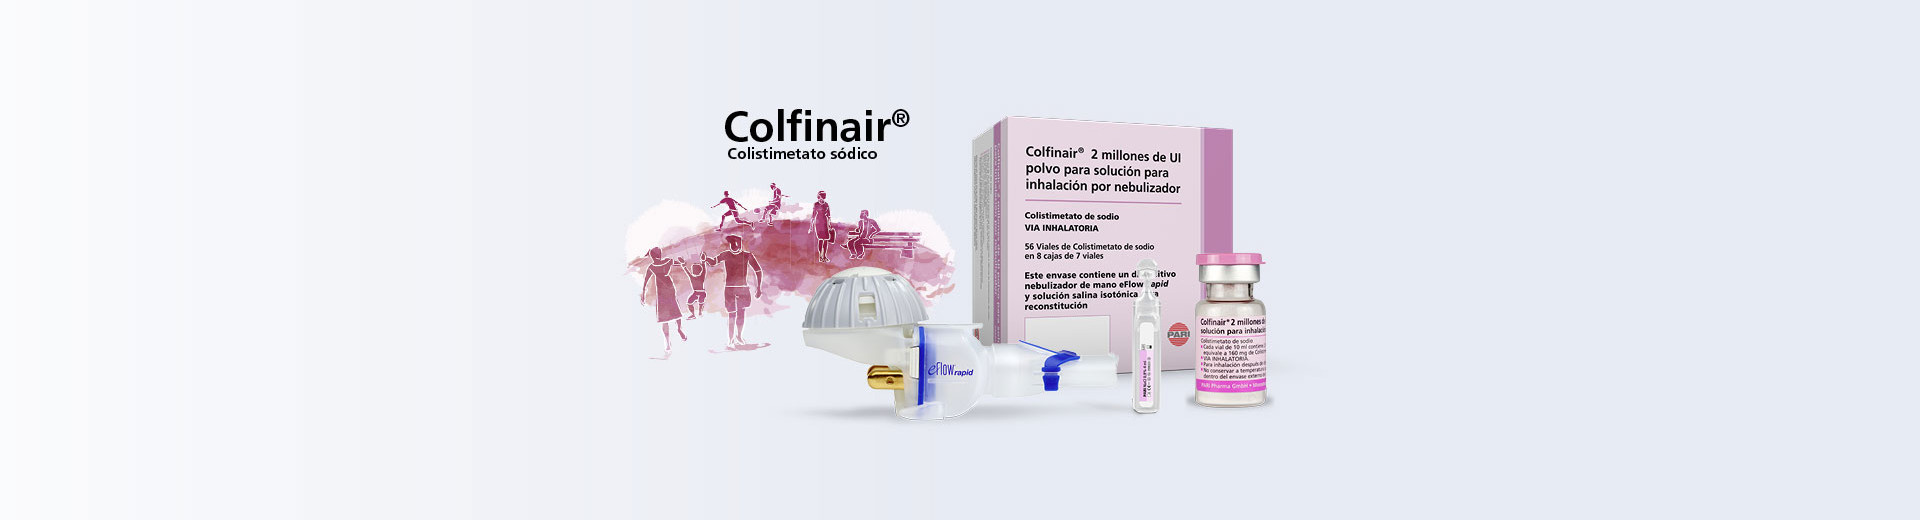 Colfinair – Colistimetato sodico, 2 millones de UI